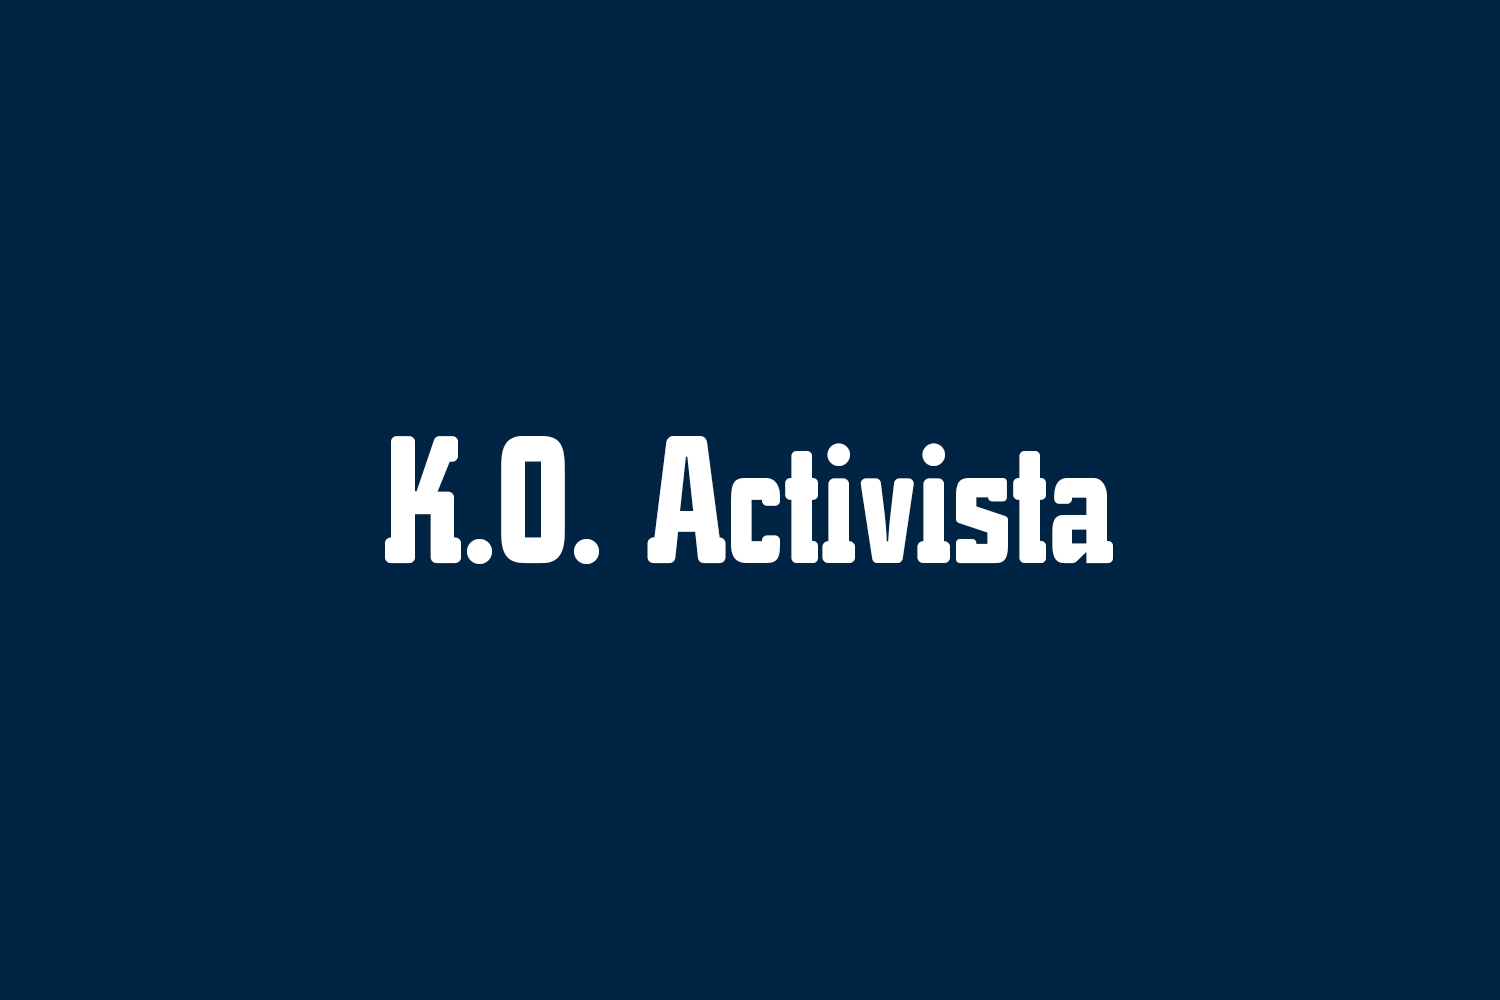 K.O. Activista Free Font